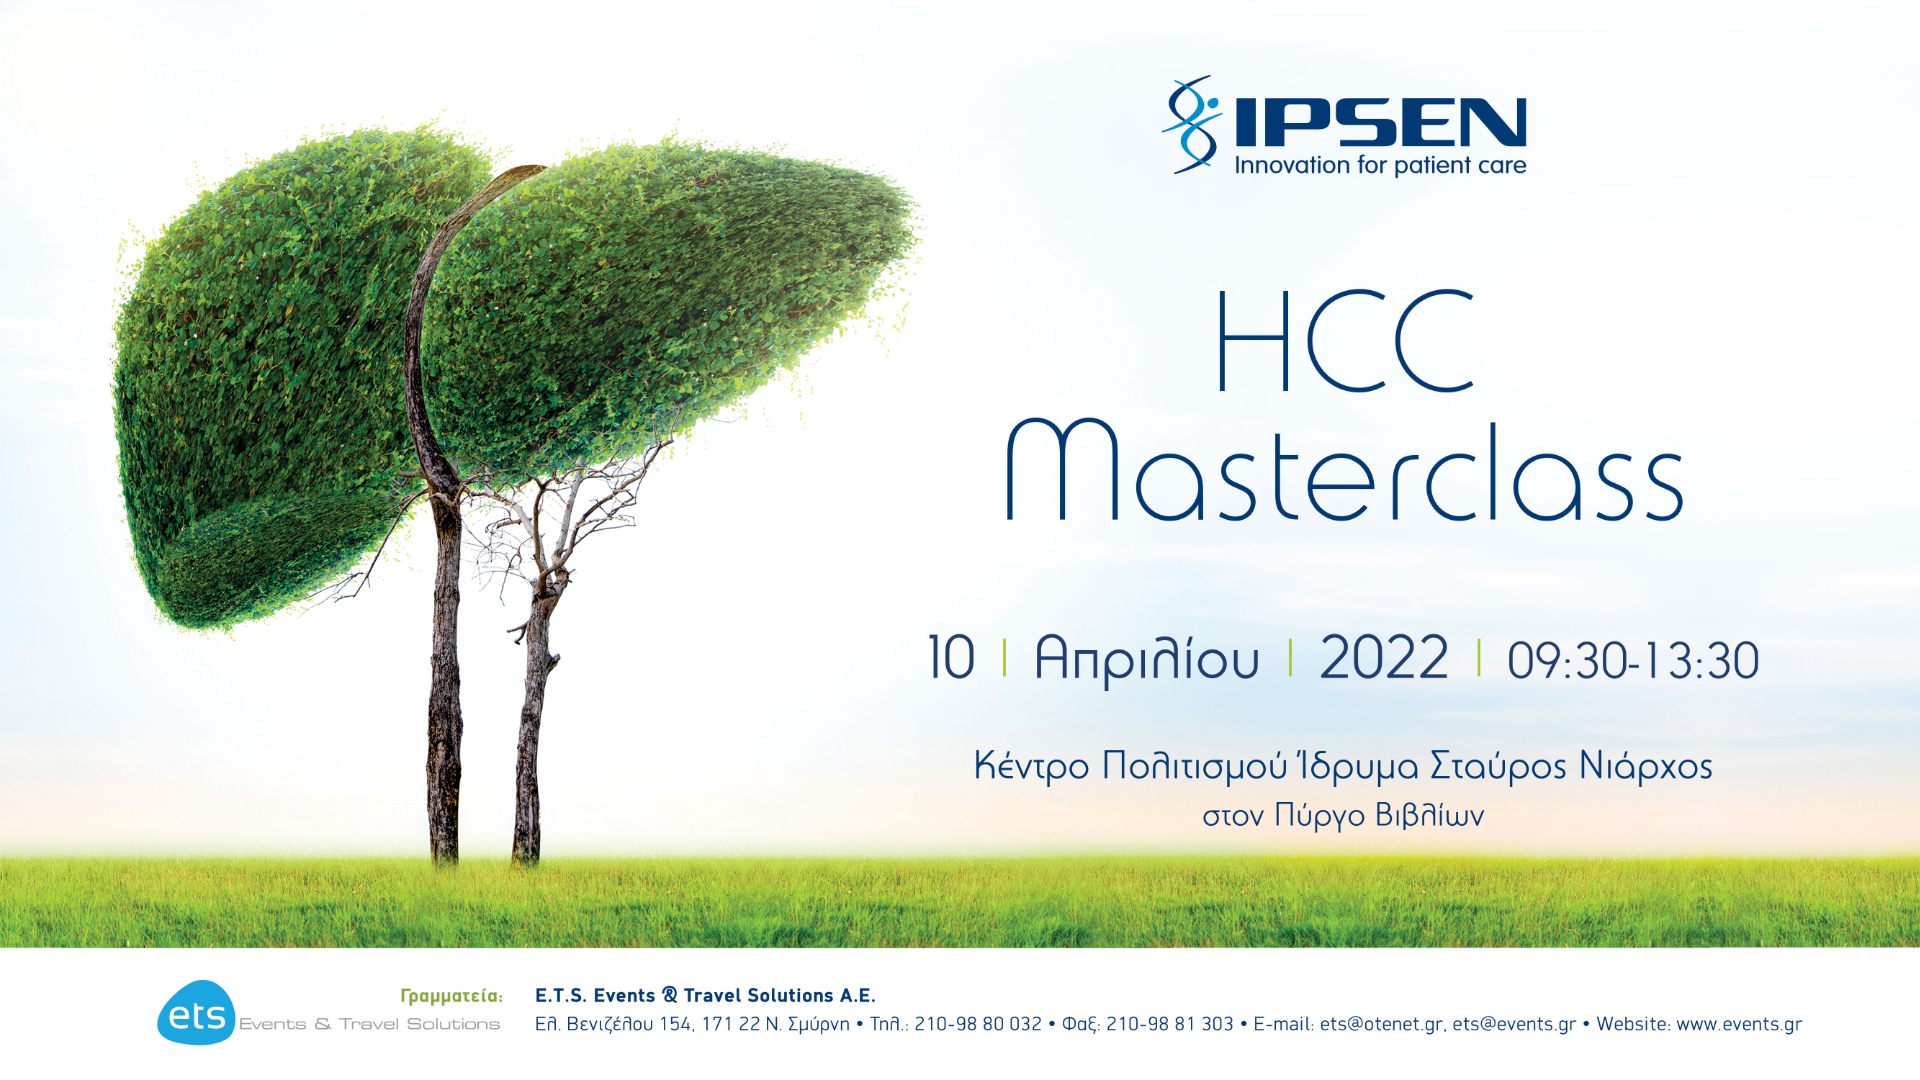 IPSEN HCC Masterclass